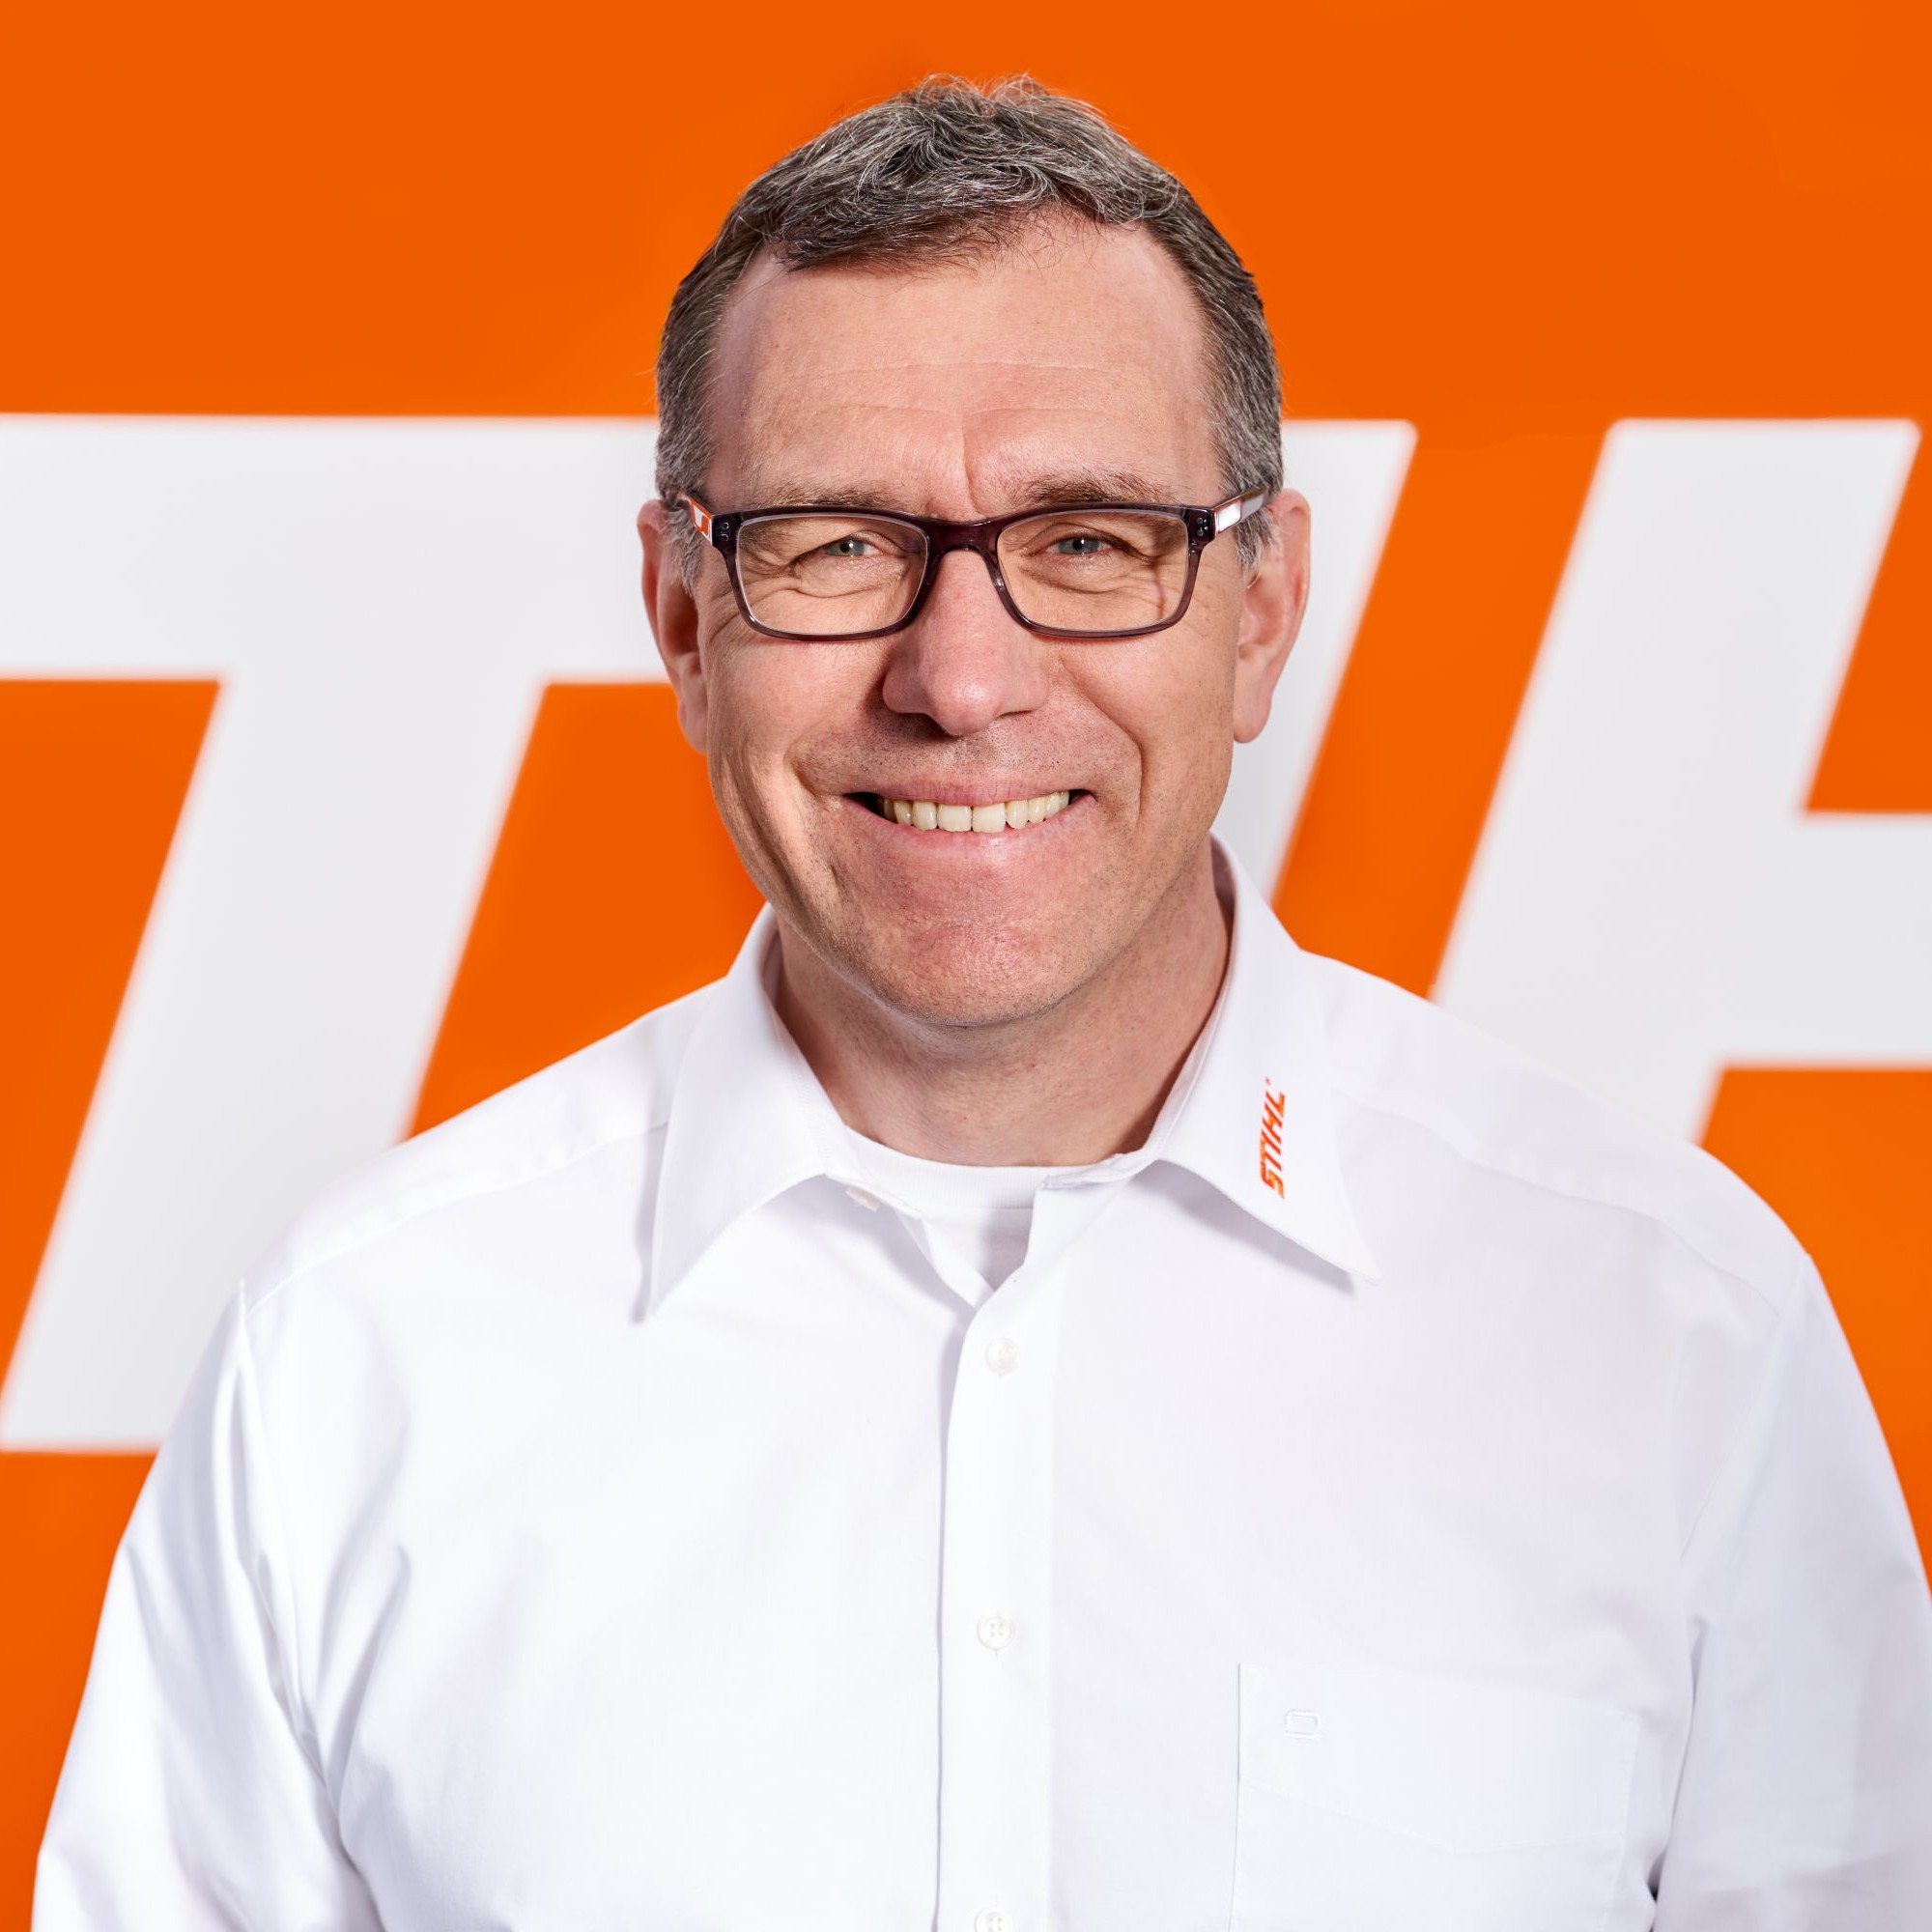 Ralph Turke ist CEO der Stihl Vertriebs AG